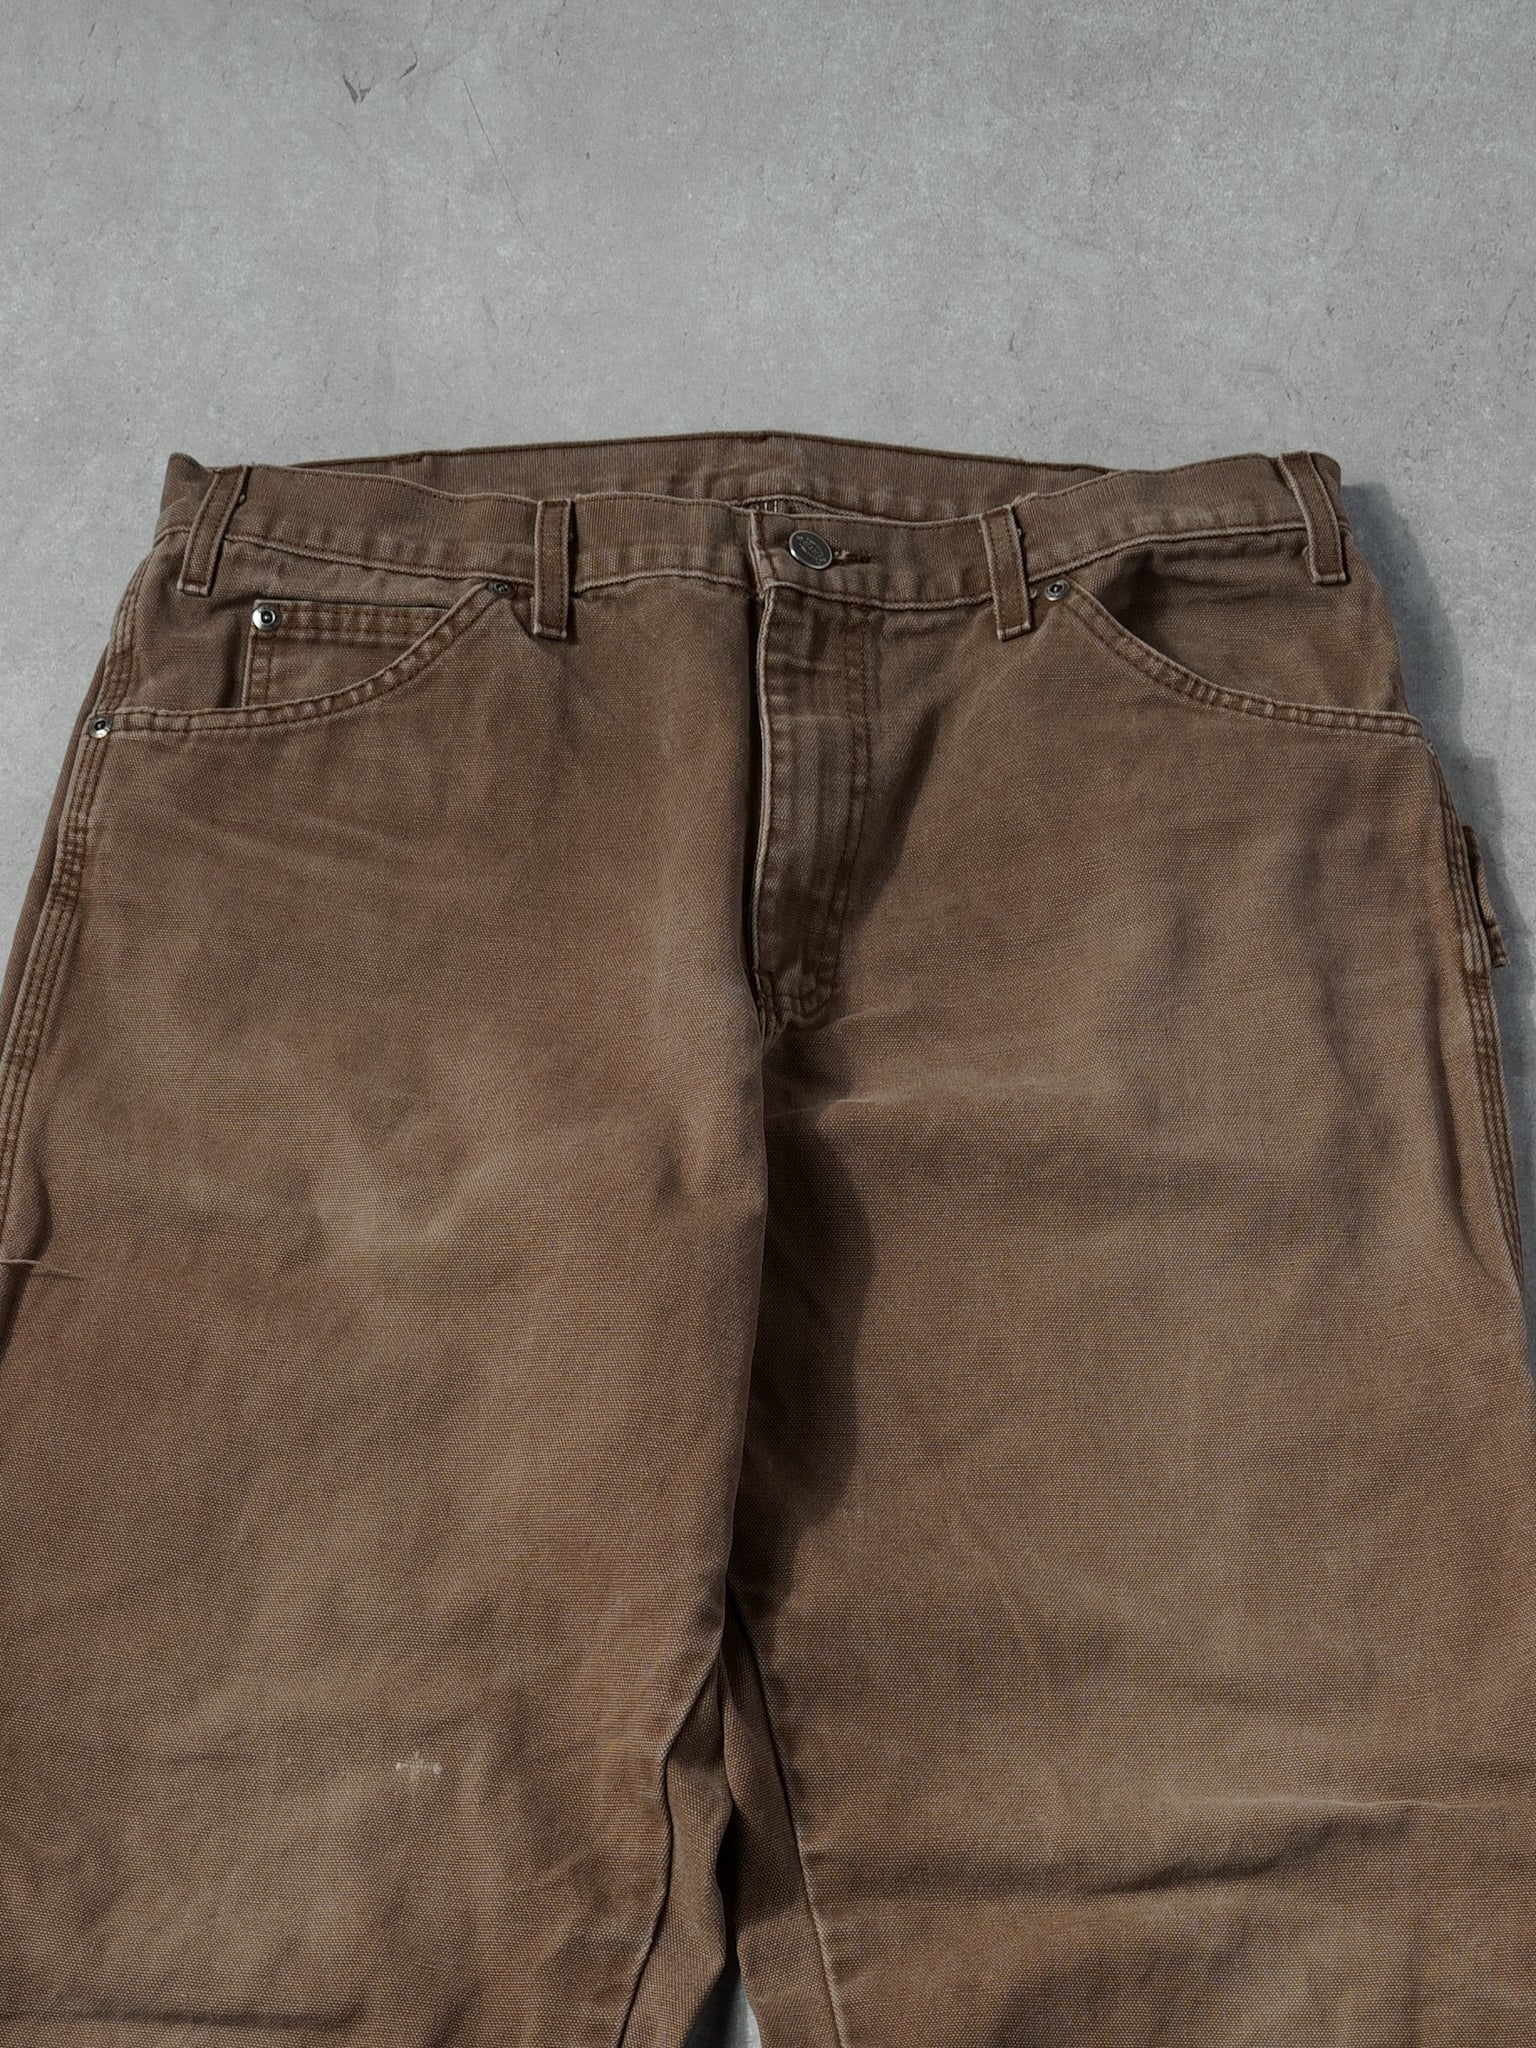 Vintage 90s Brown Dickies Carpenter Pants (34x34)